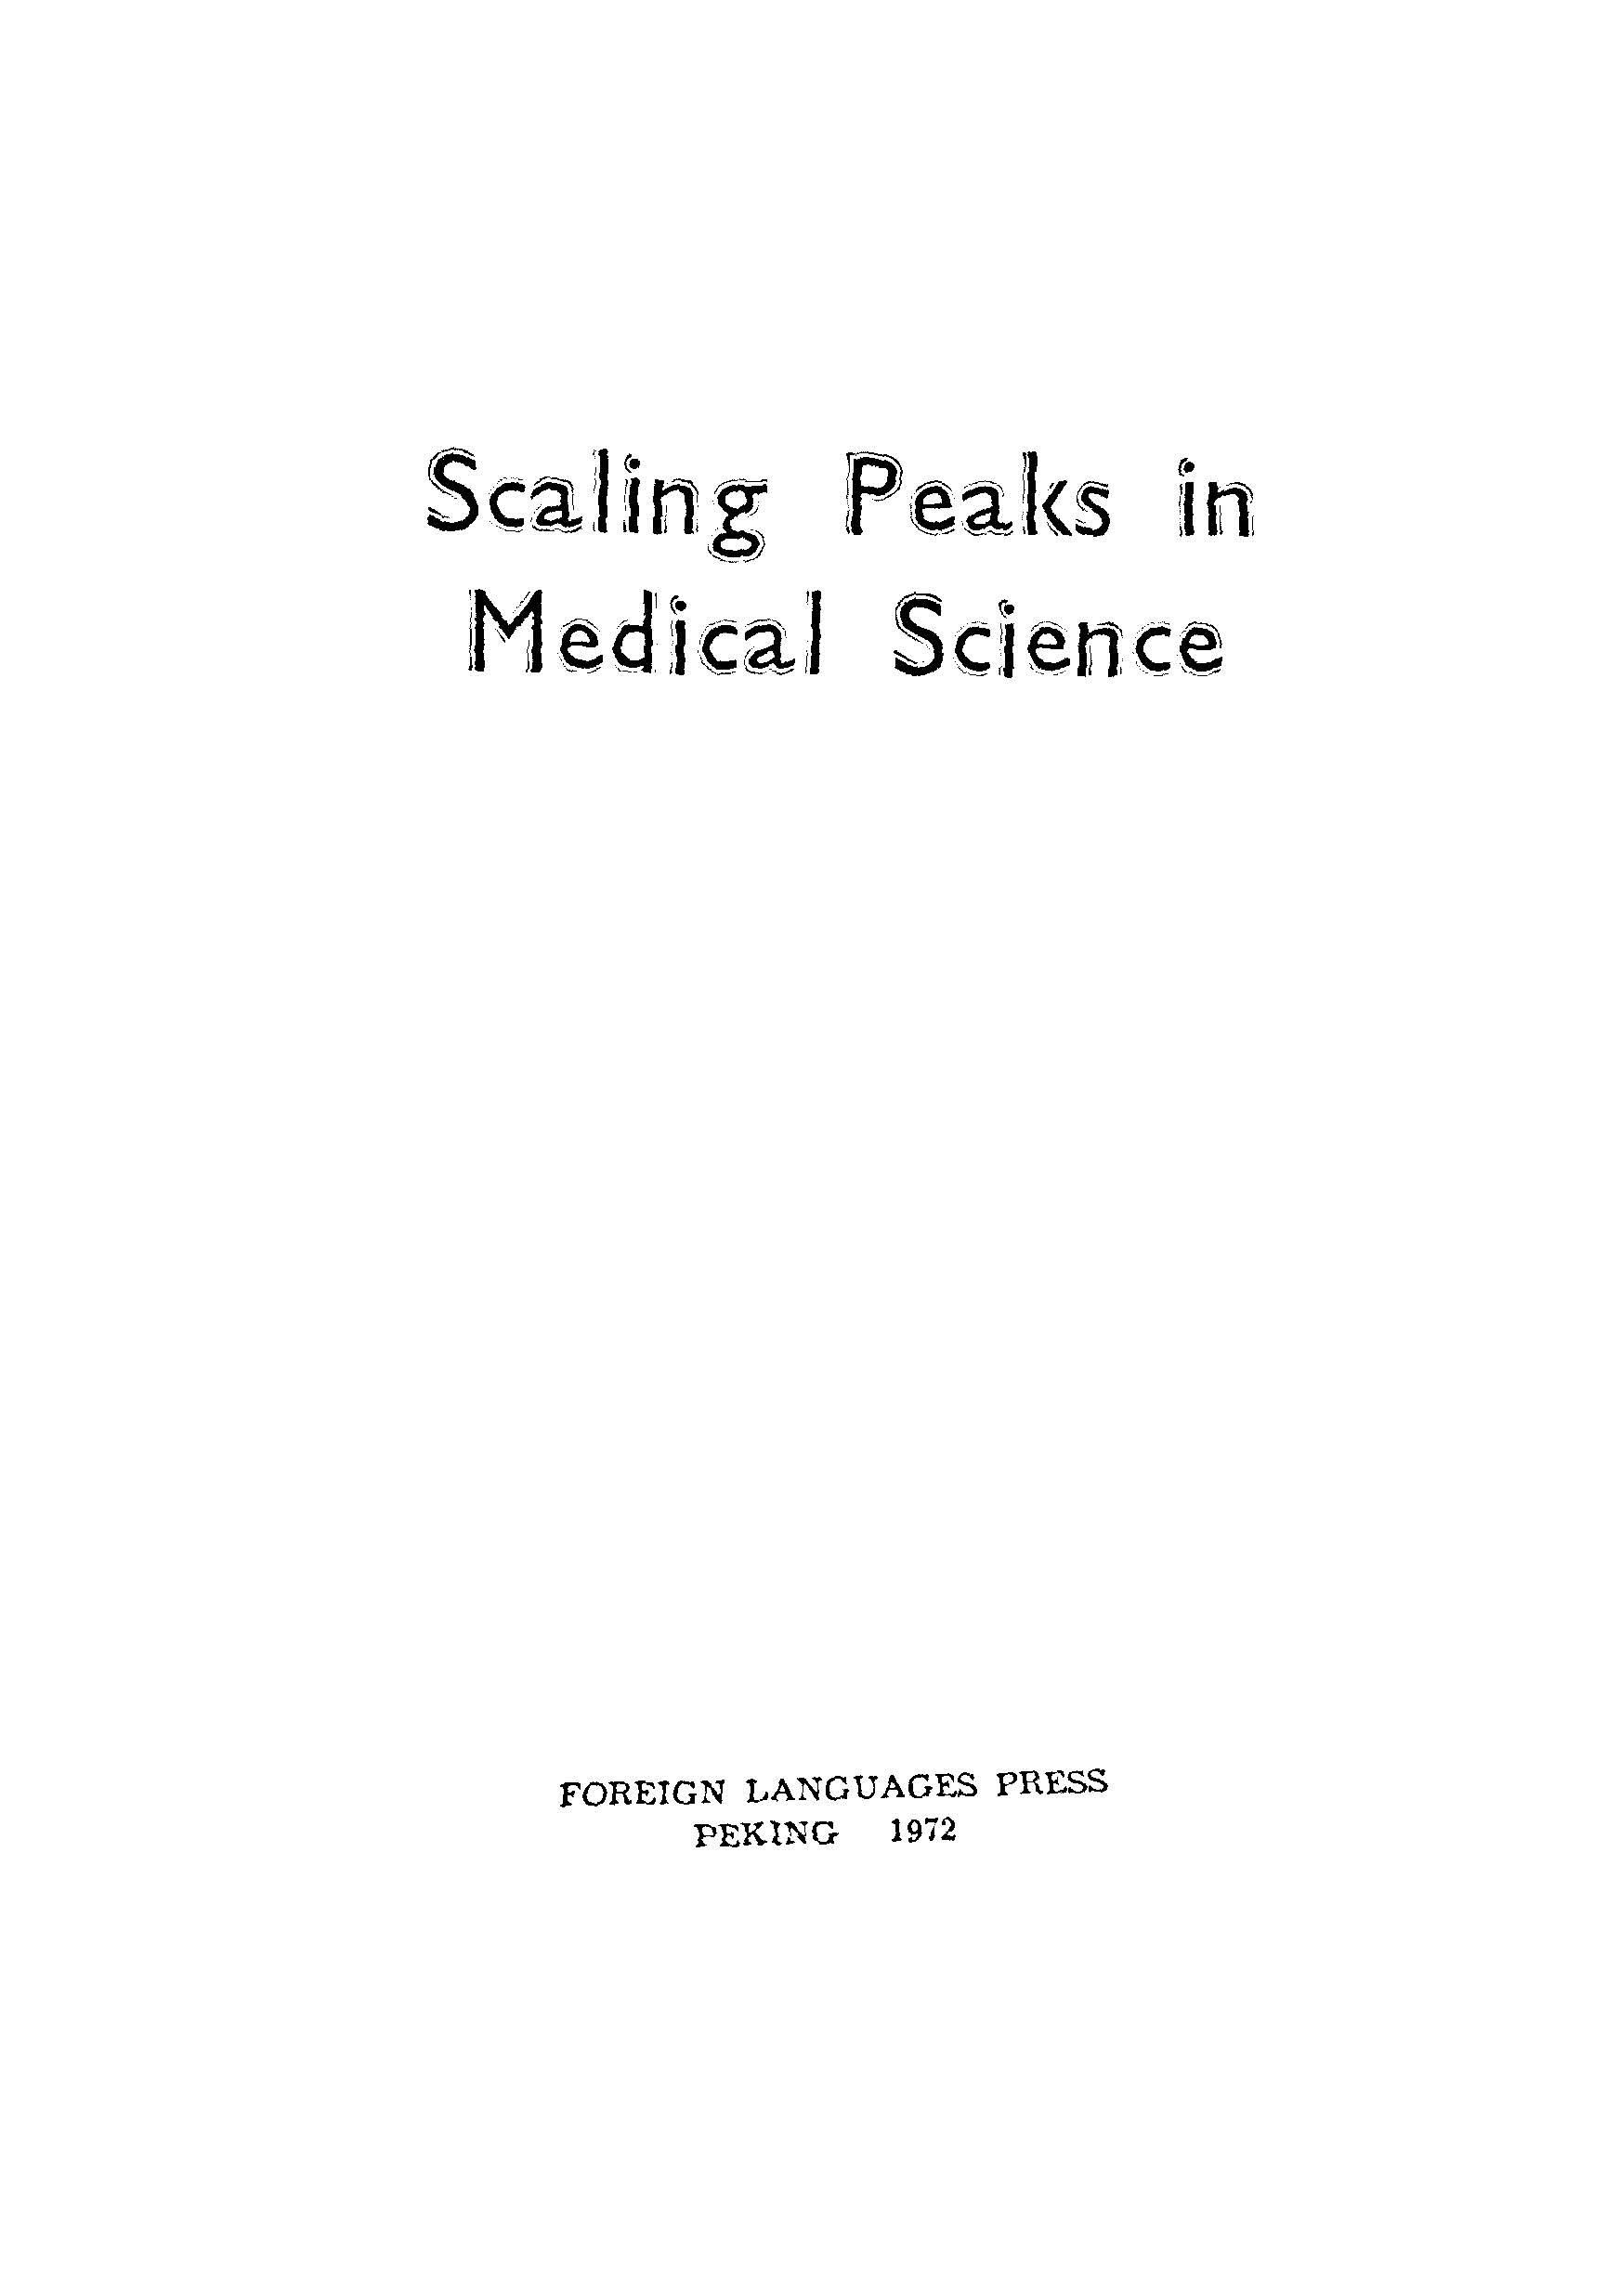 SCALING PEAKS IN MEDICAL SCIENCE